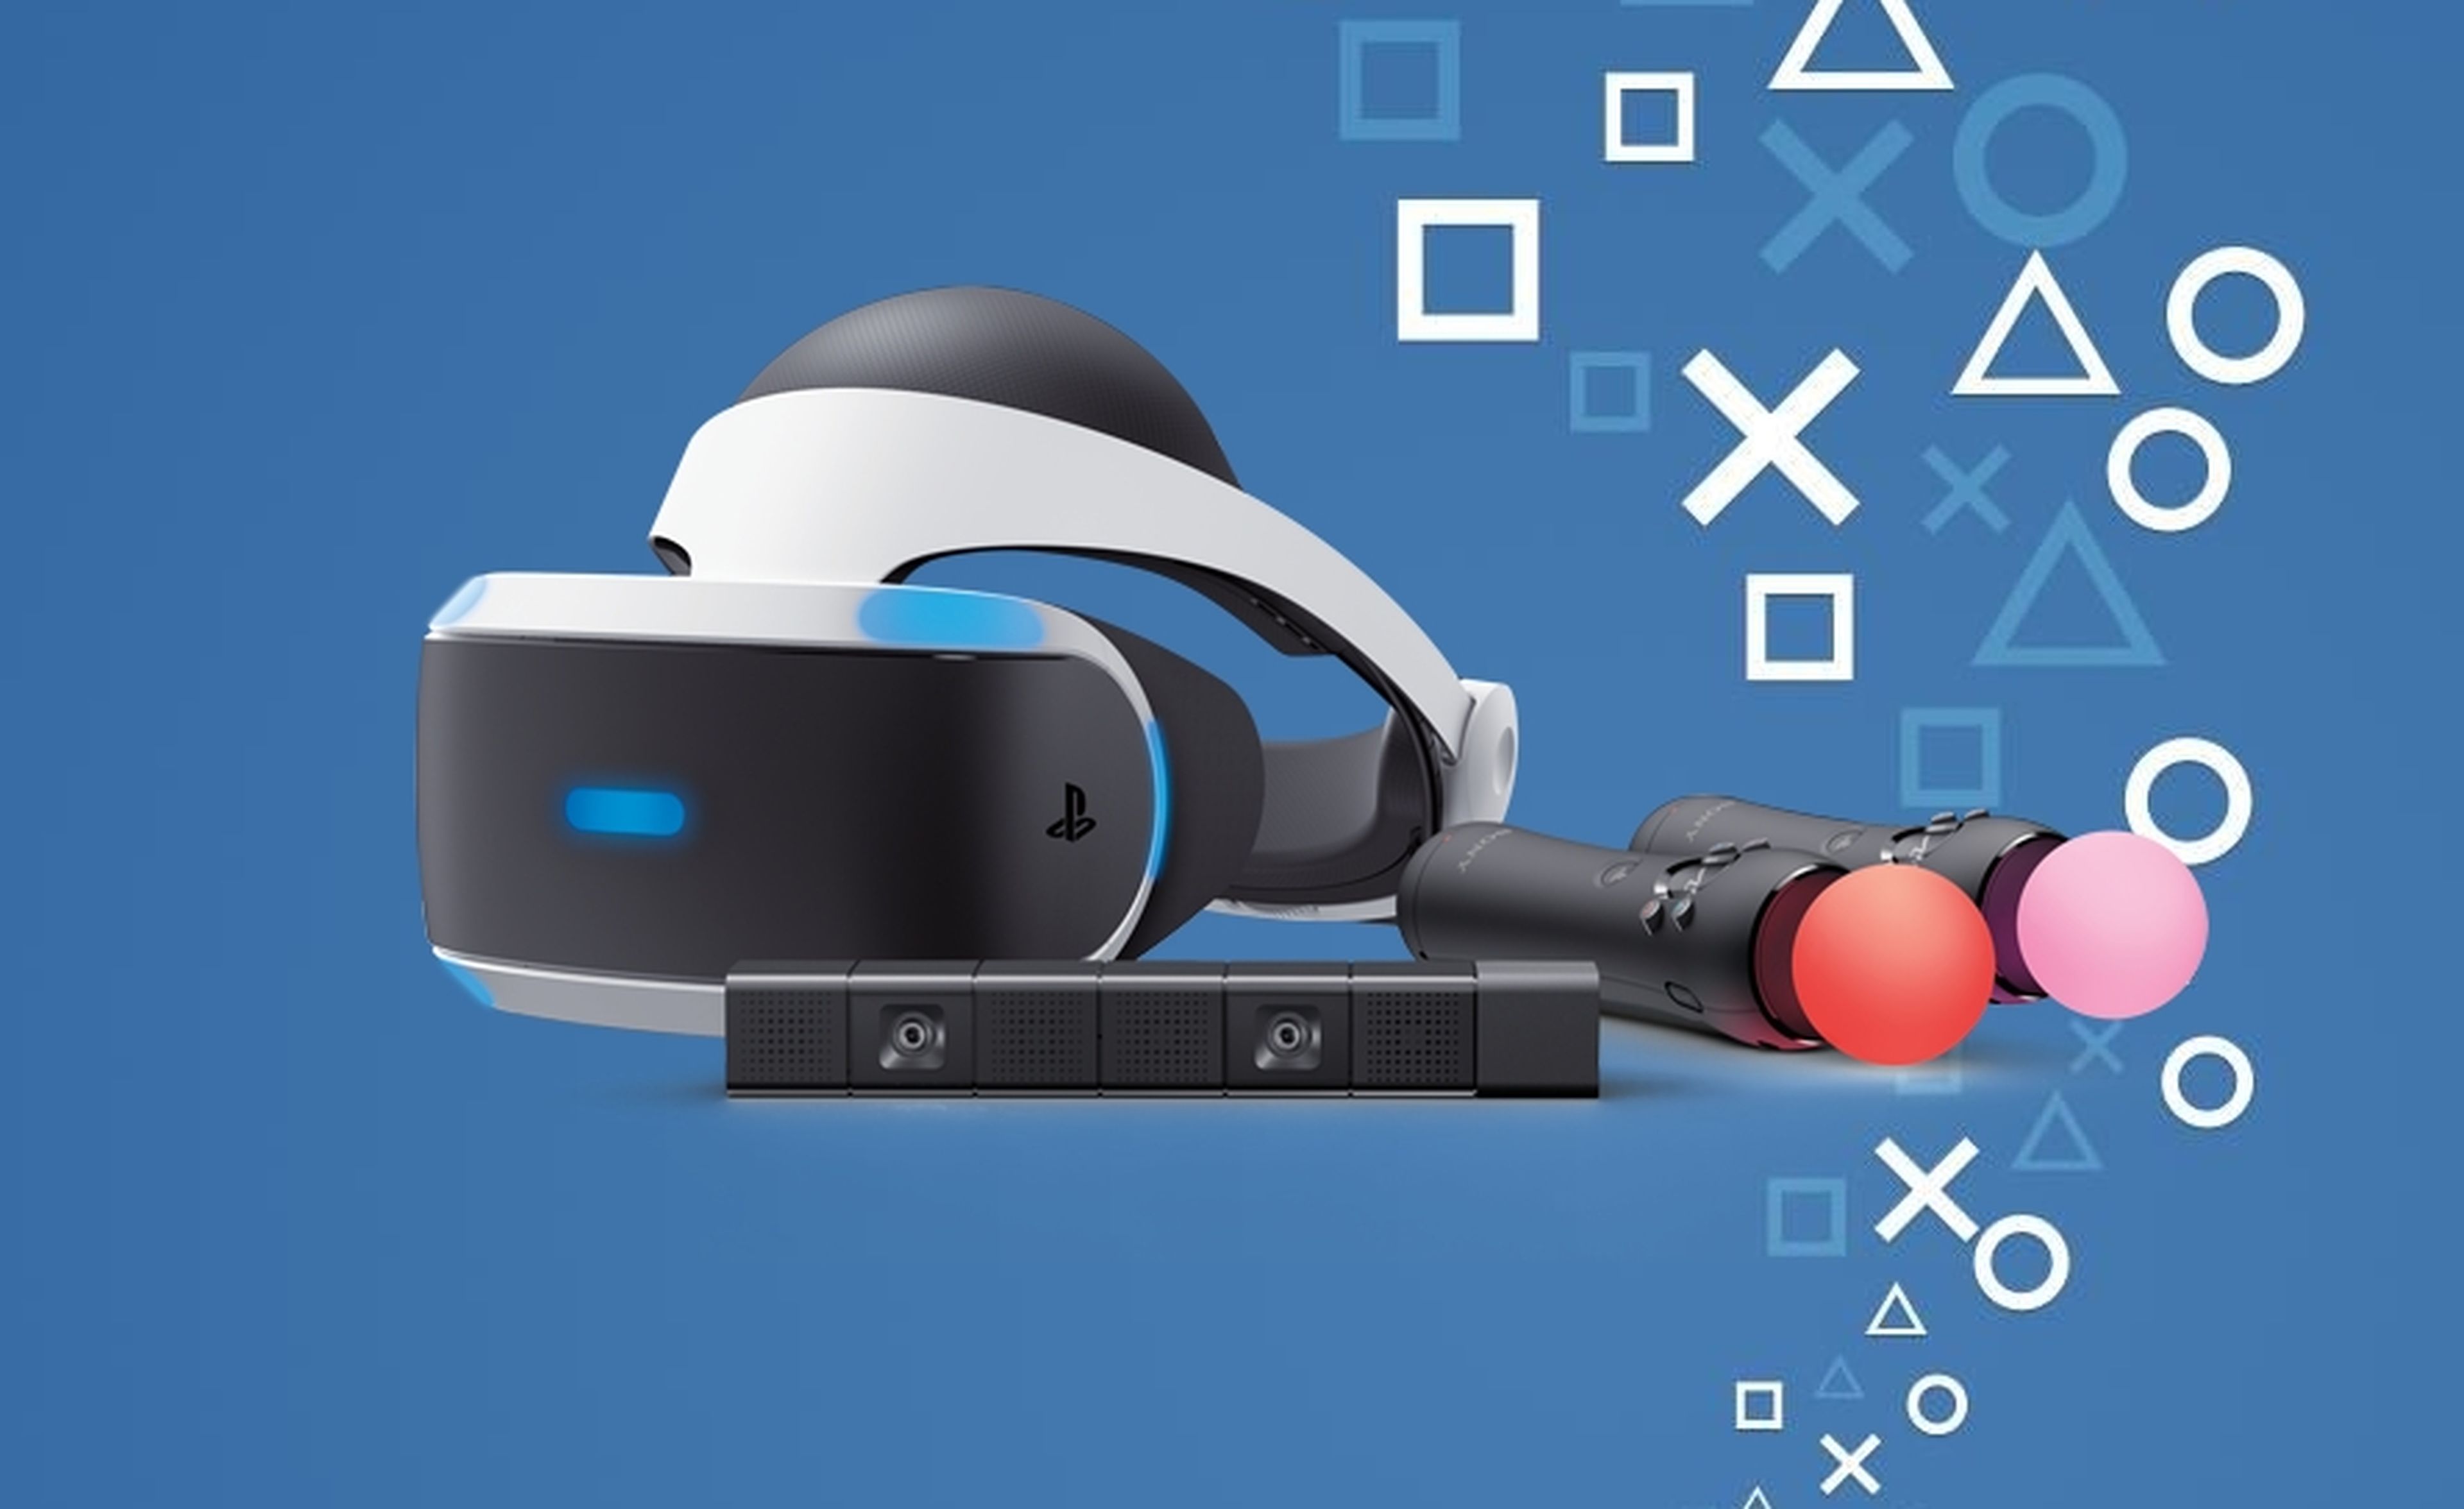 asesinato bordado Brote Todo lo que debes saber antes de comprar PlayStation VR | Hobby Consolas